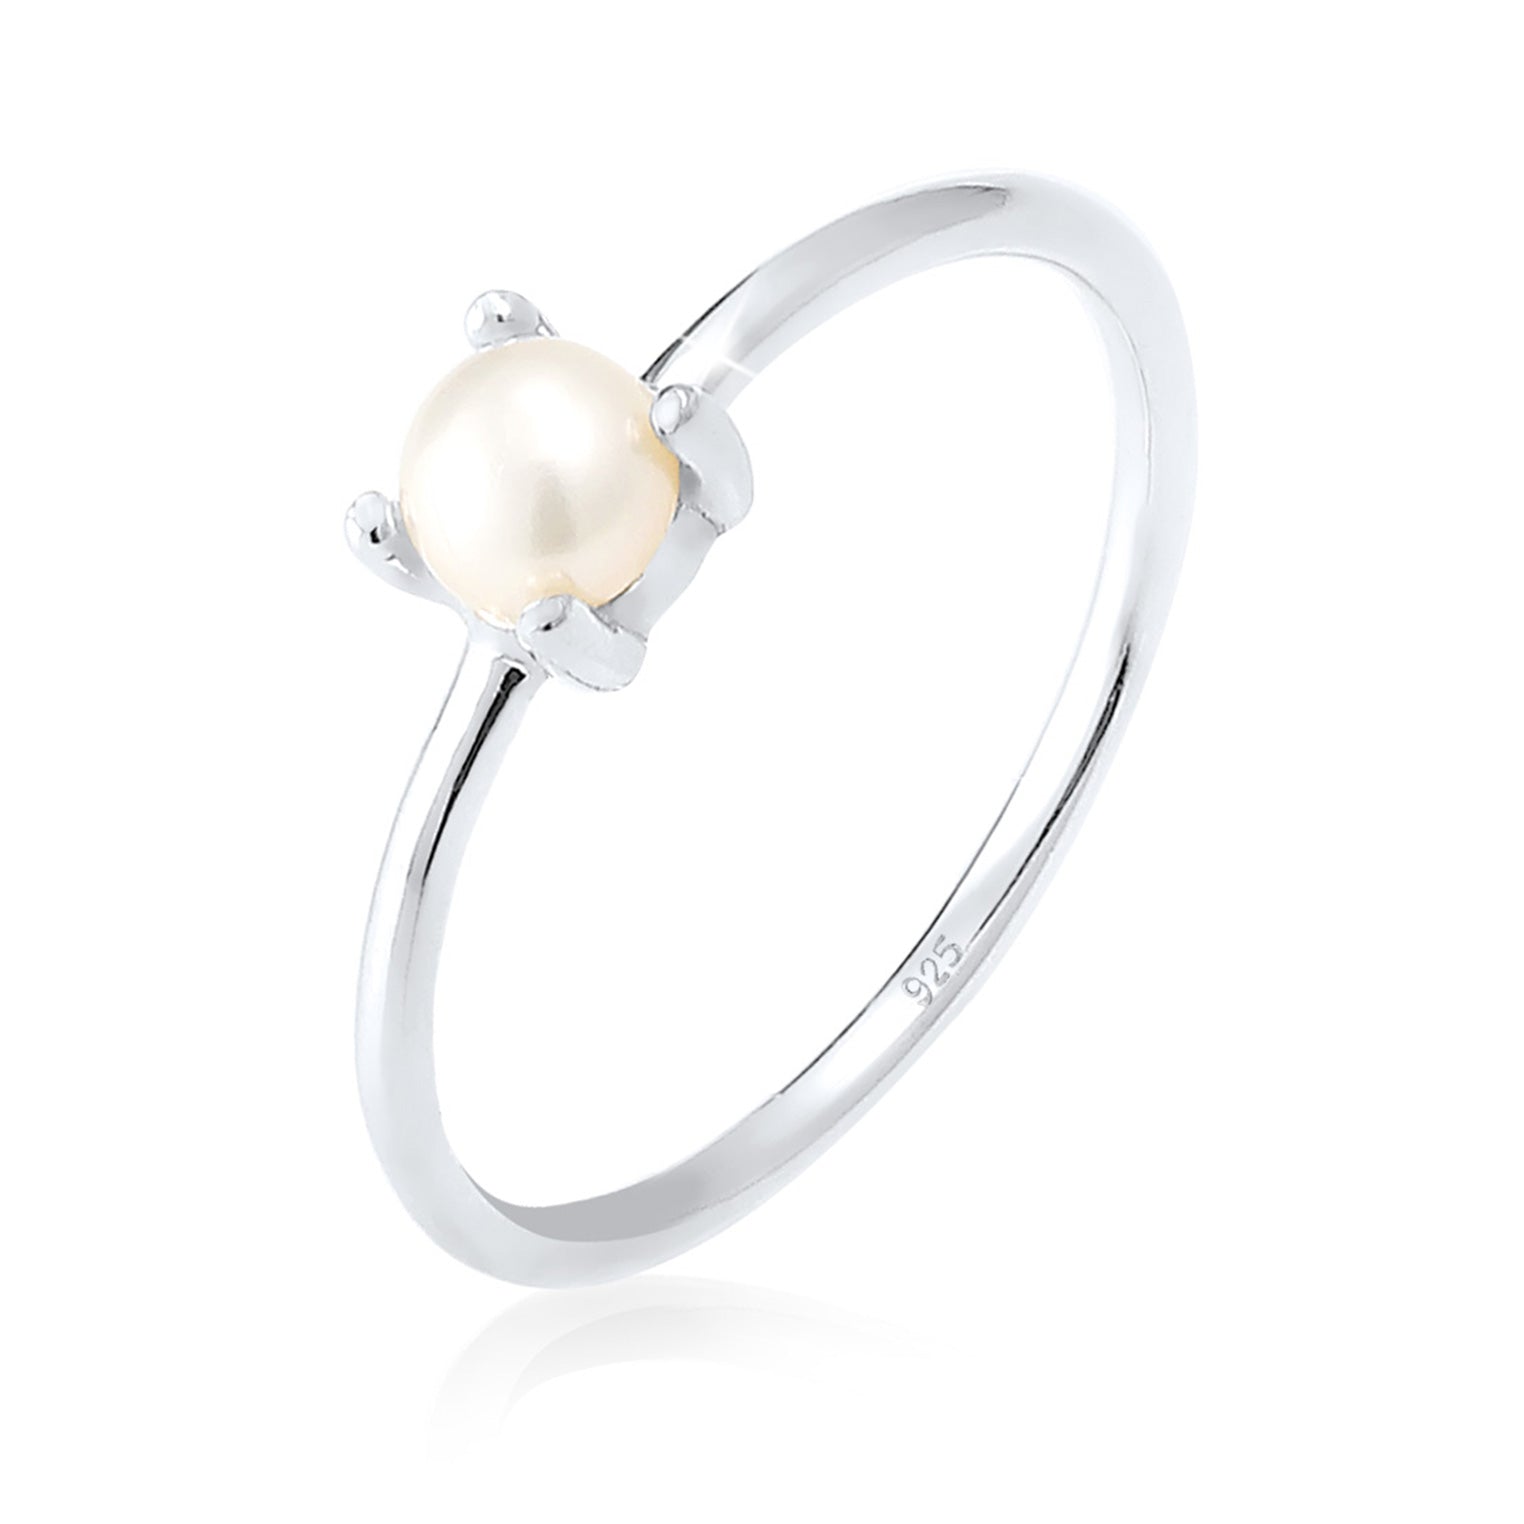 Perlenringe stilvoll und hochwertig | Jewelry Elli Elli – bei